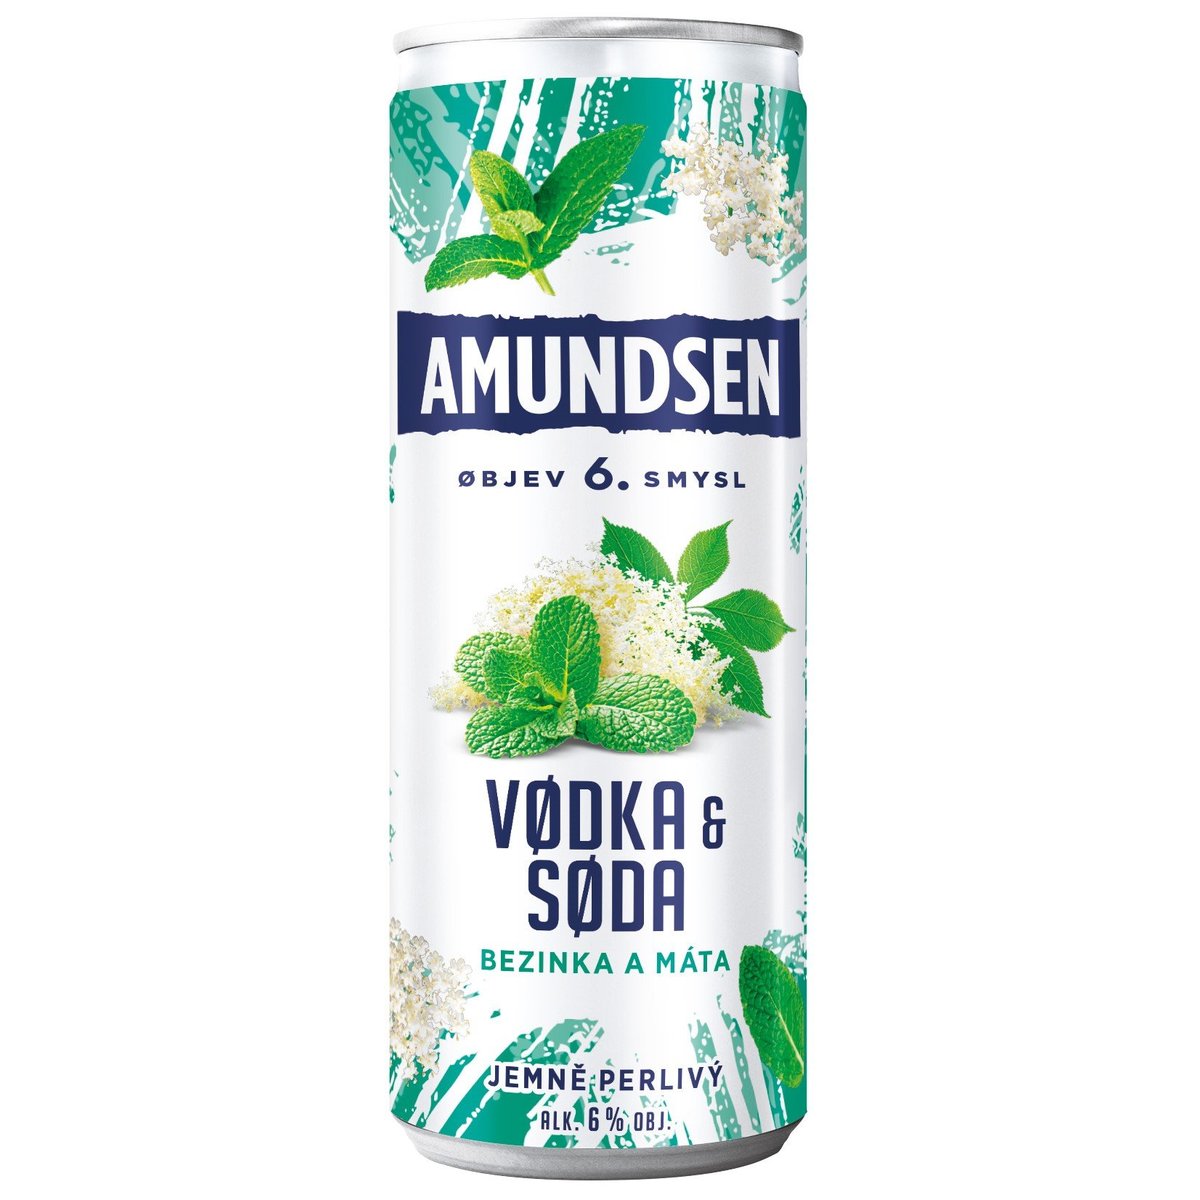 Amundsen Vodka & Soda s bezinkou a mátou Ready to Drink 6 % plech